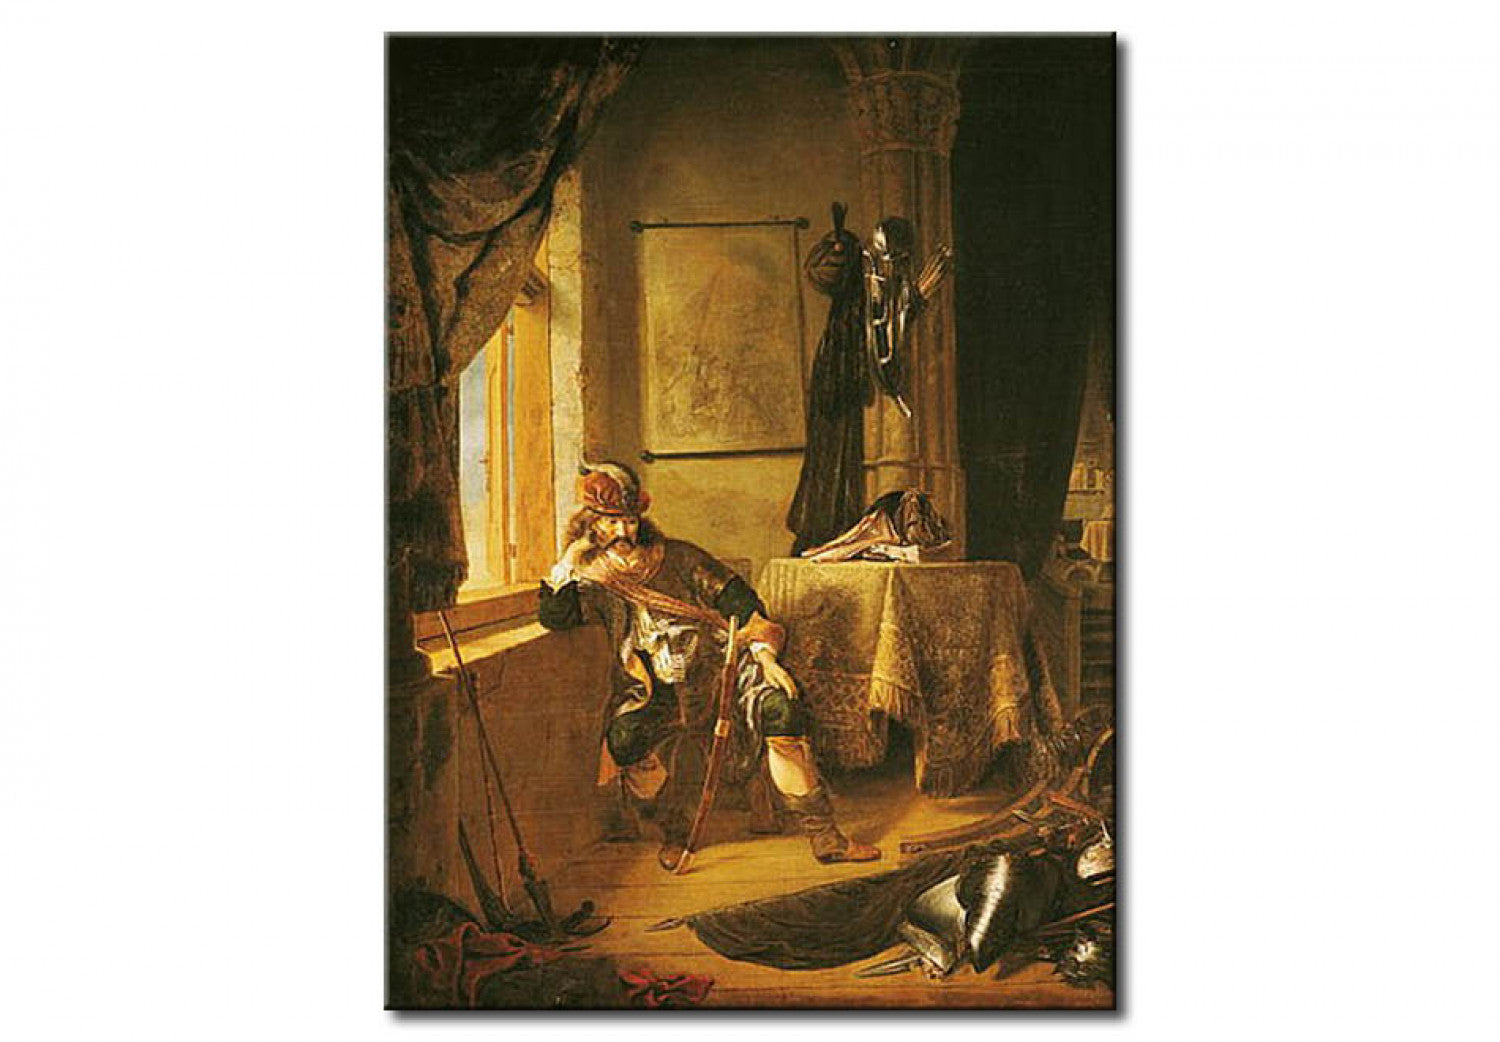 A Warrior in Thought - Rembrandt van Rijn